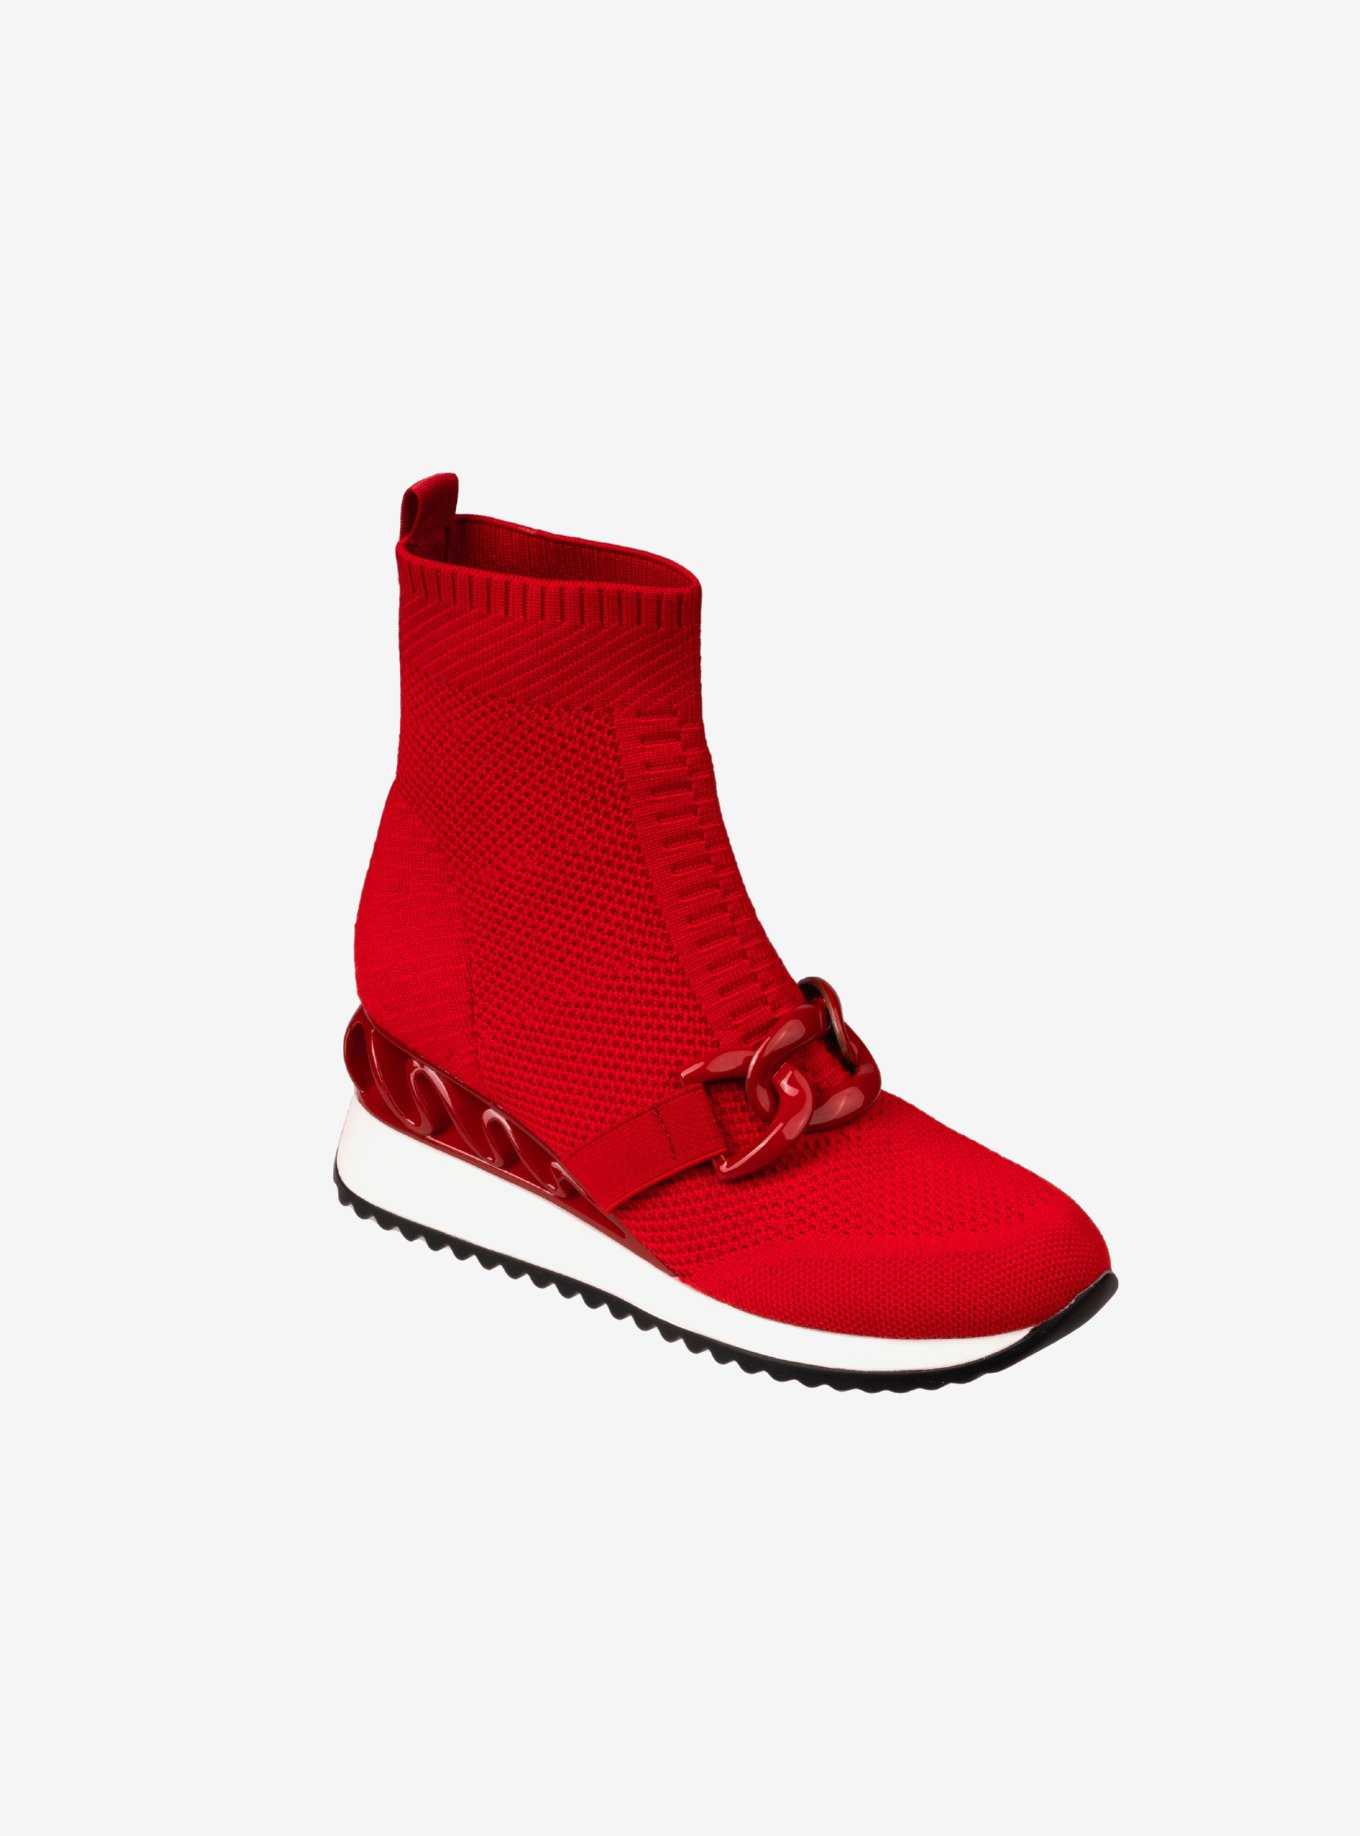 Brooklyn Wedge Sneaker Red, , hi-res